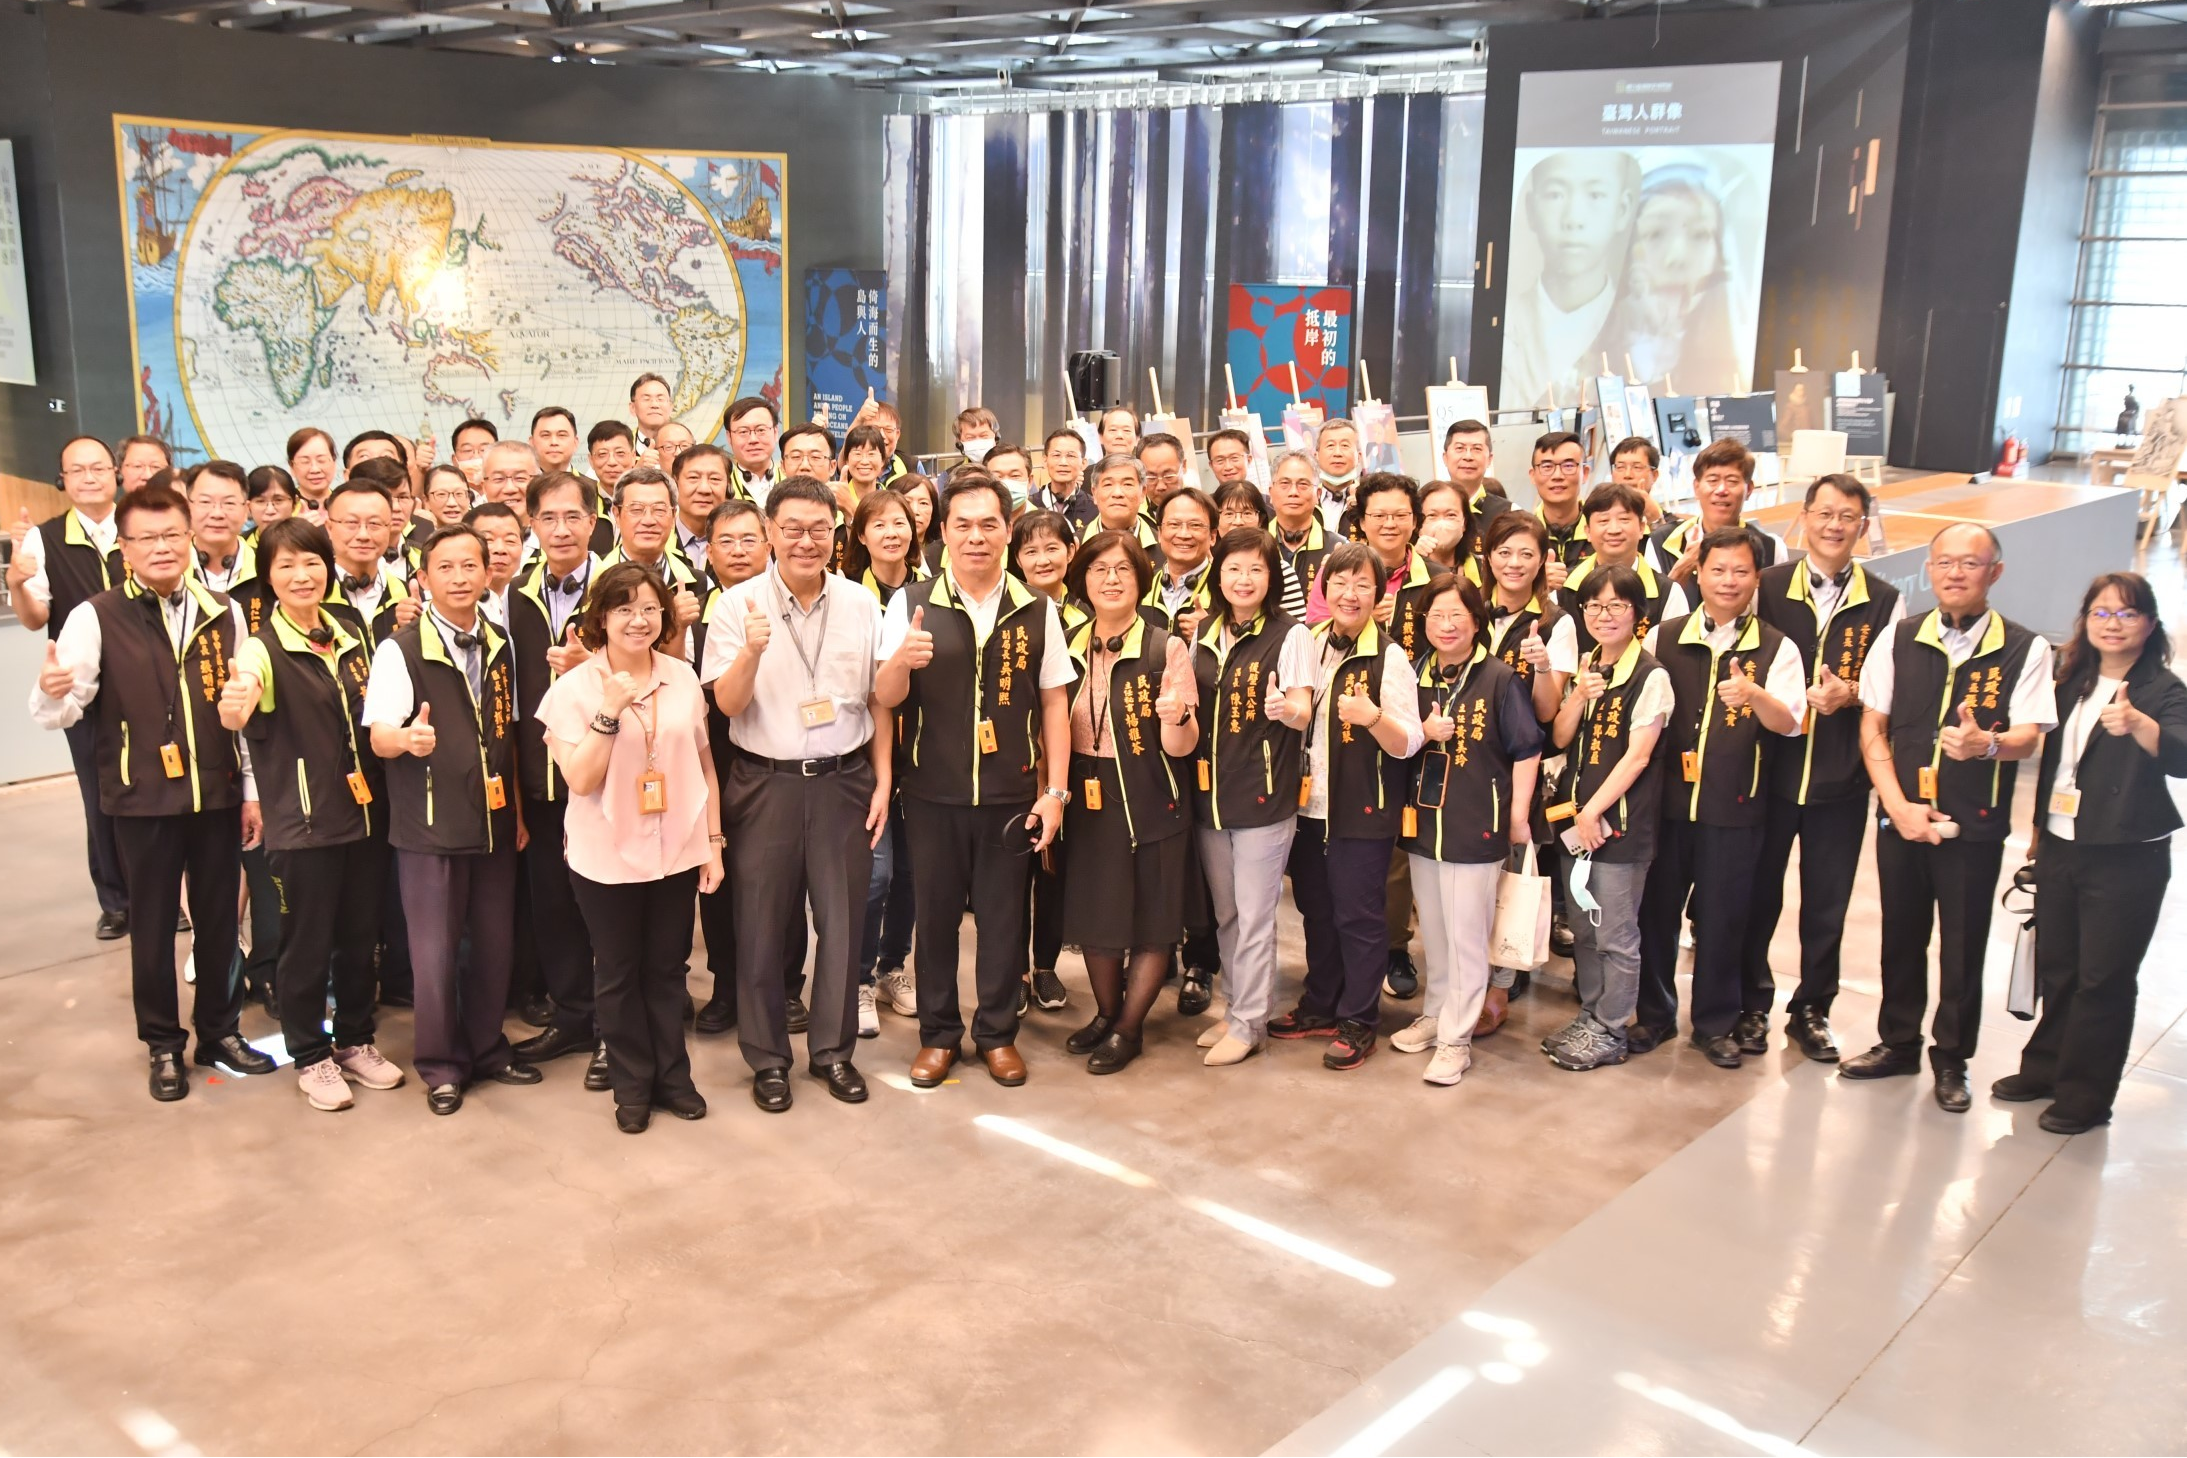 臺史博張隆志館長（前排左2）宣布「我市臺灣通：臺南人專案」，自5月18日起至5月31日止臺南市民及師生免費參觀臺史博。